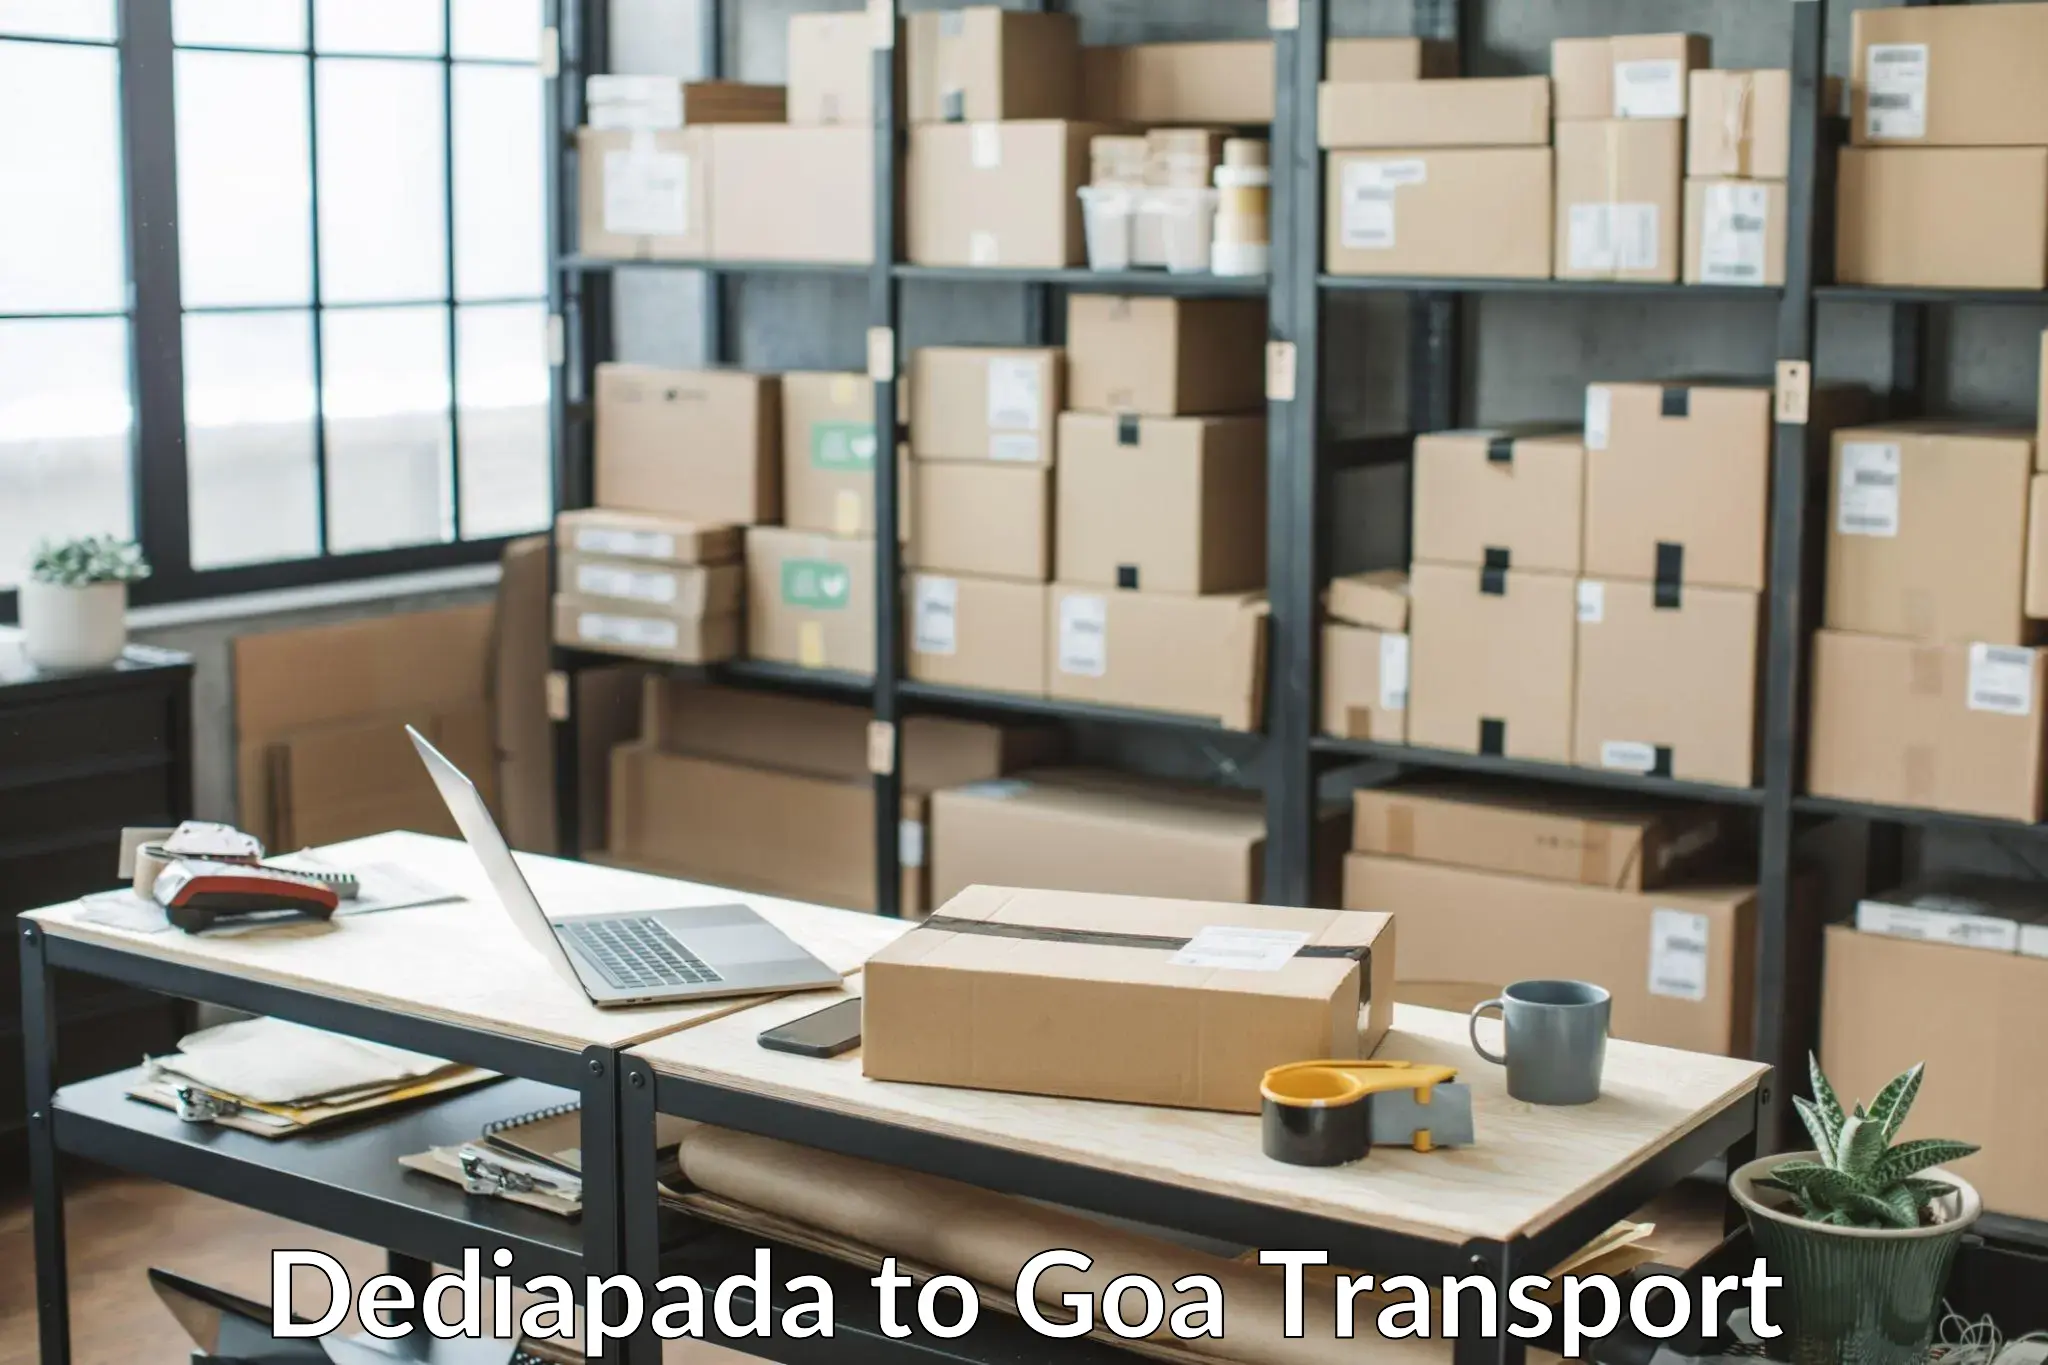 Container transport service Dediapada to South Goa